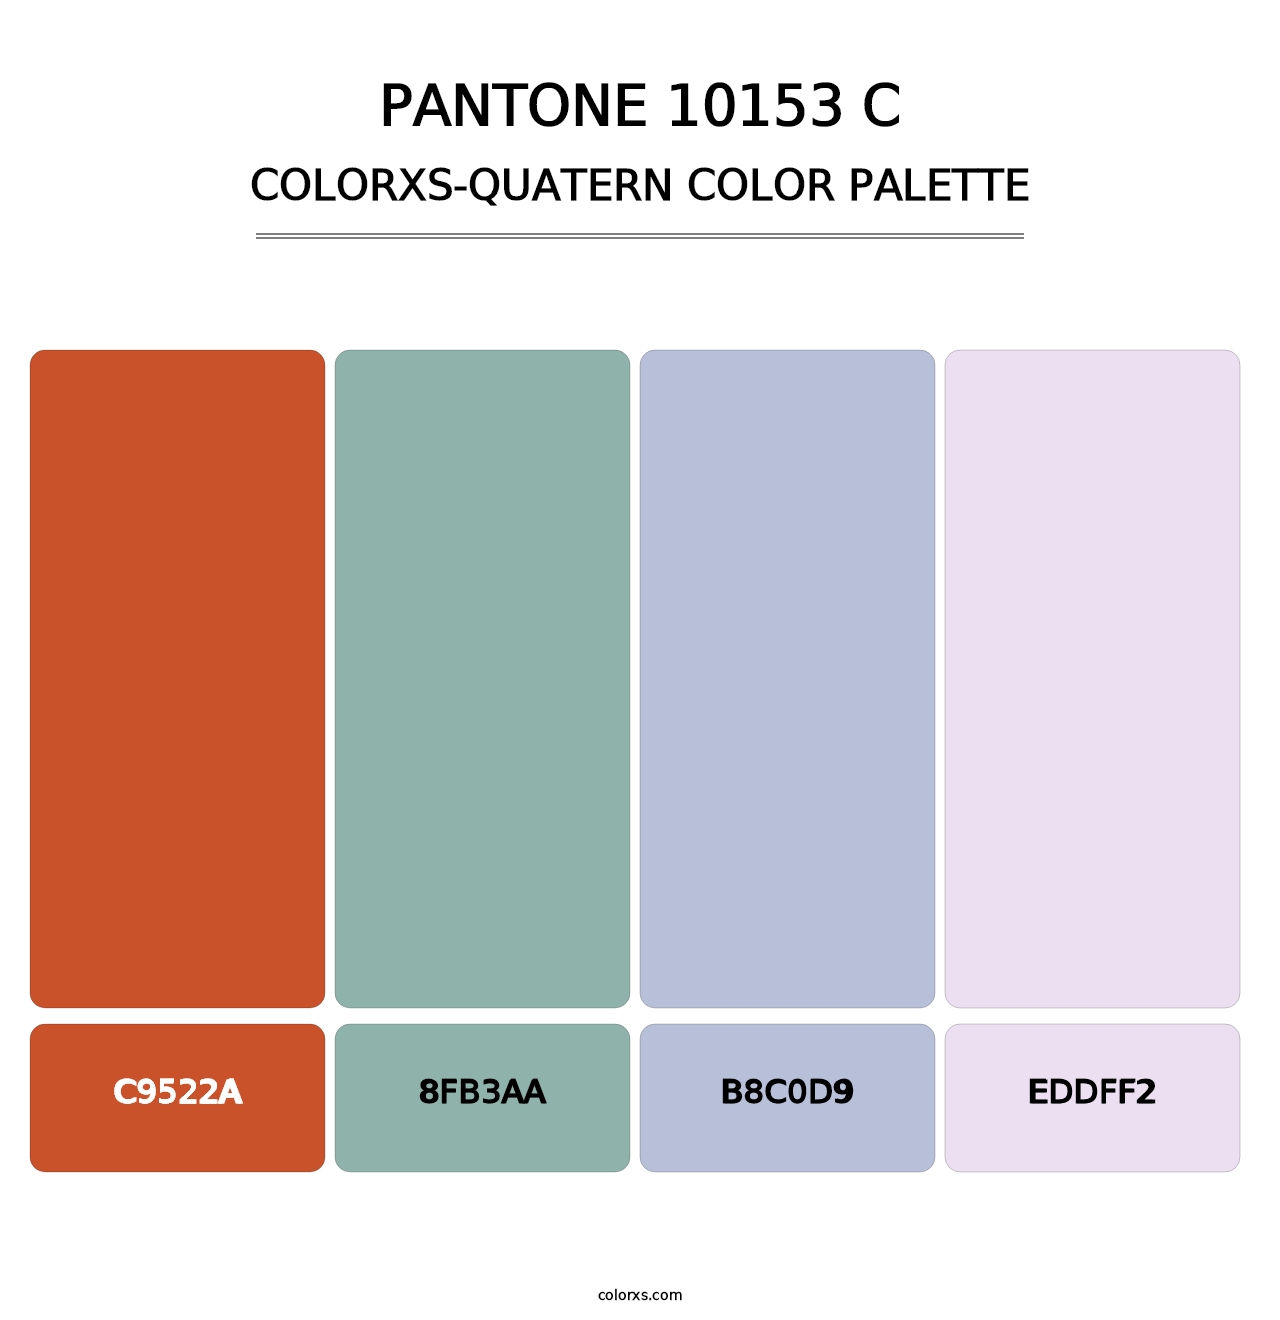 PANTONE 10153 C - Colorxs Quatern Palette